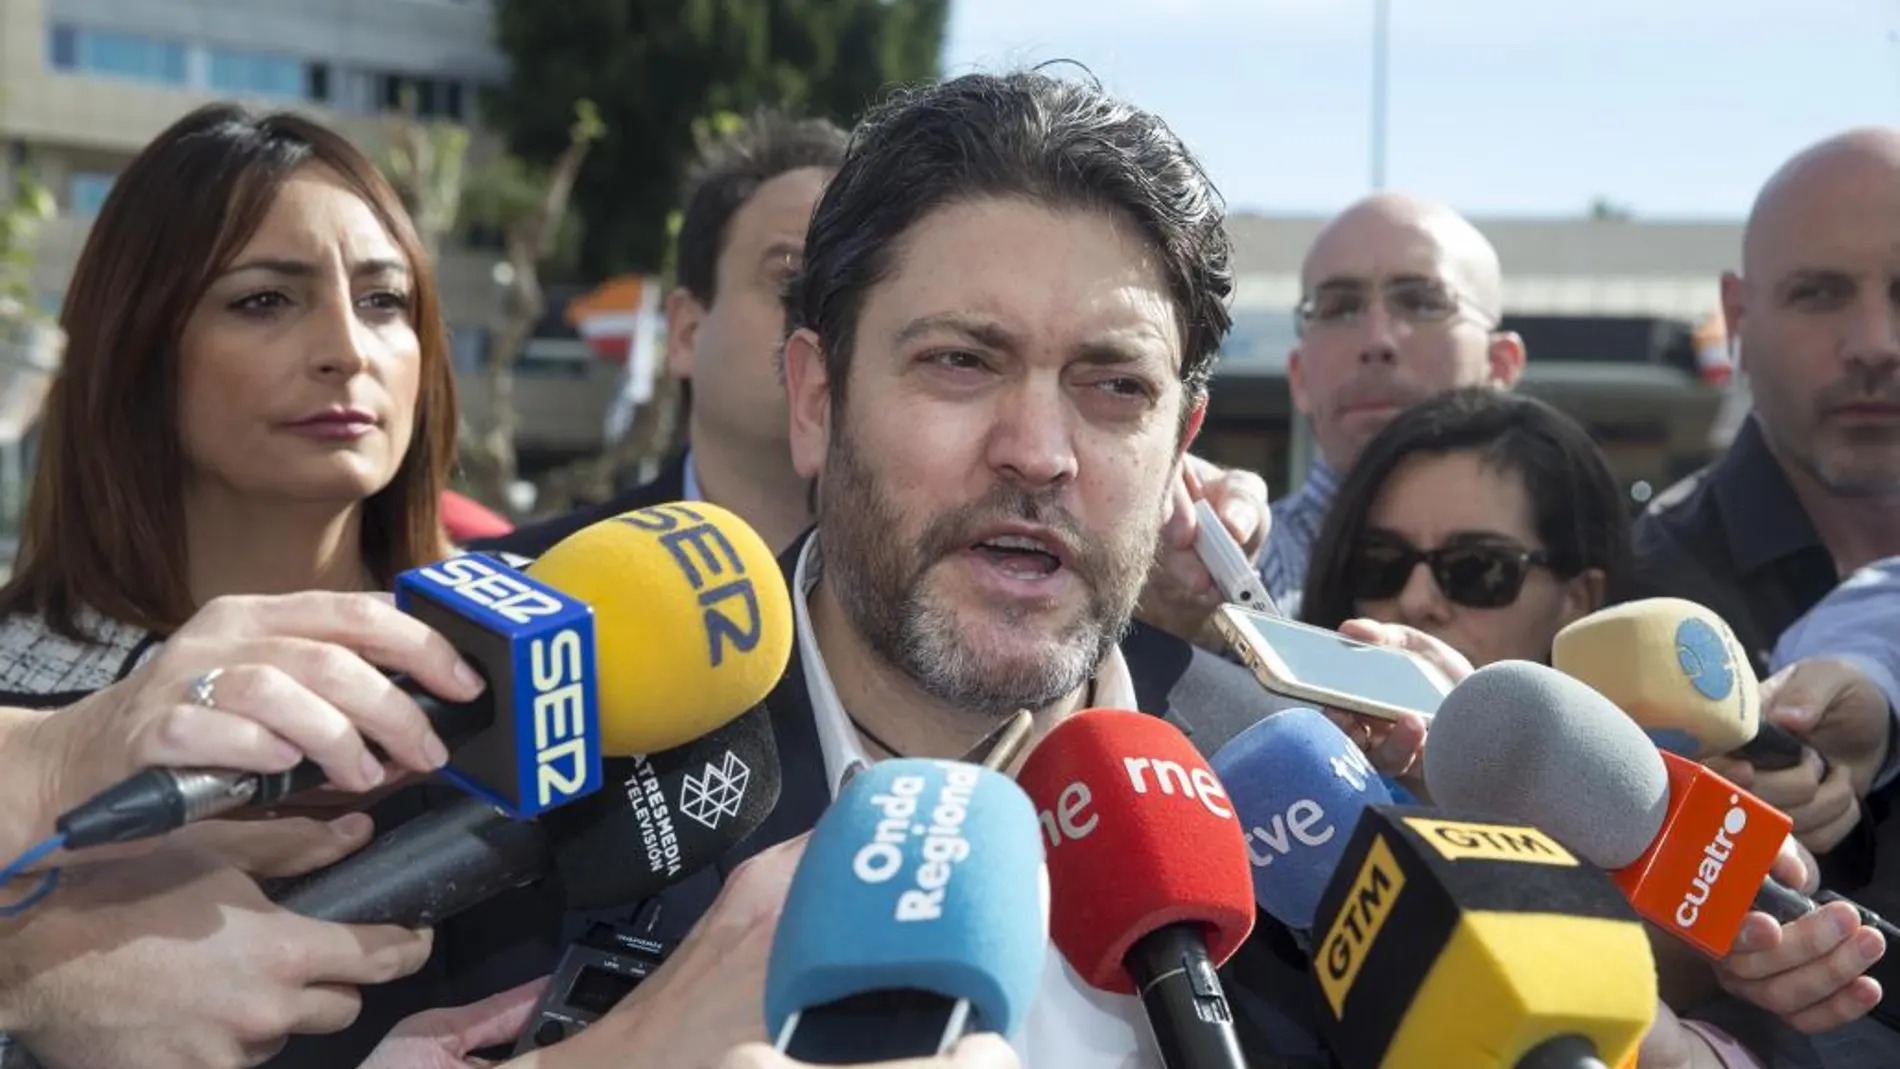 El líder de Ciudadanos en la Comunidad de Murcia, Miguel Sánchez, atiende a los medios de comunicación